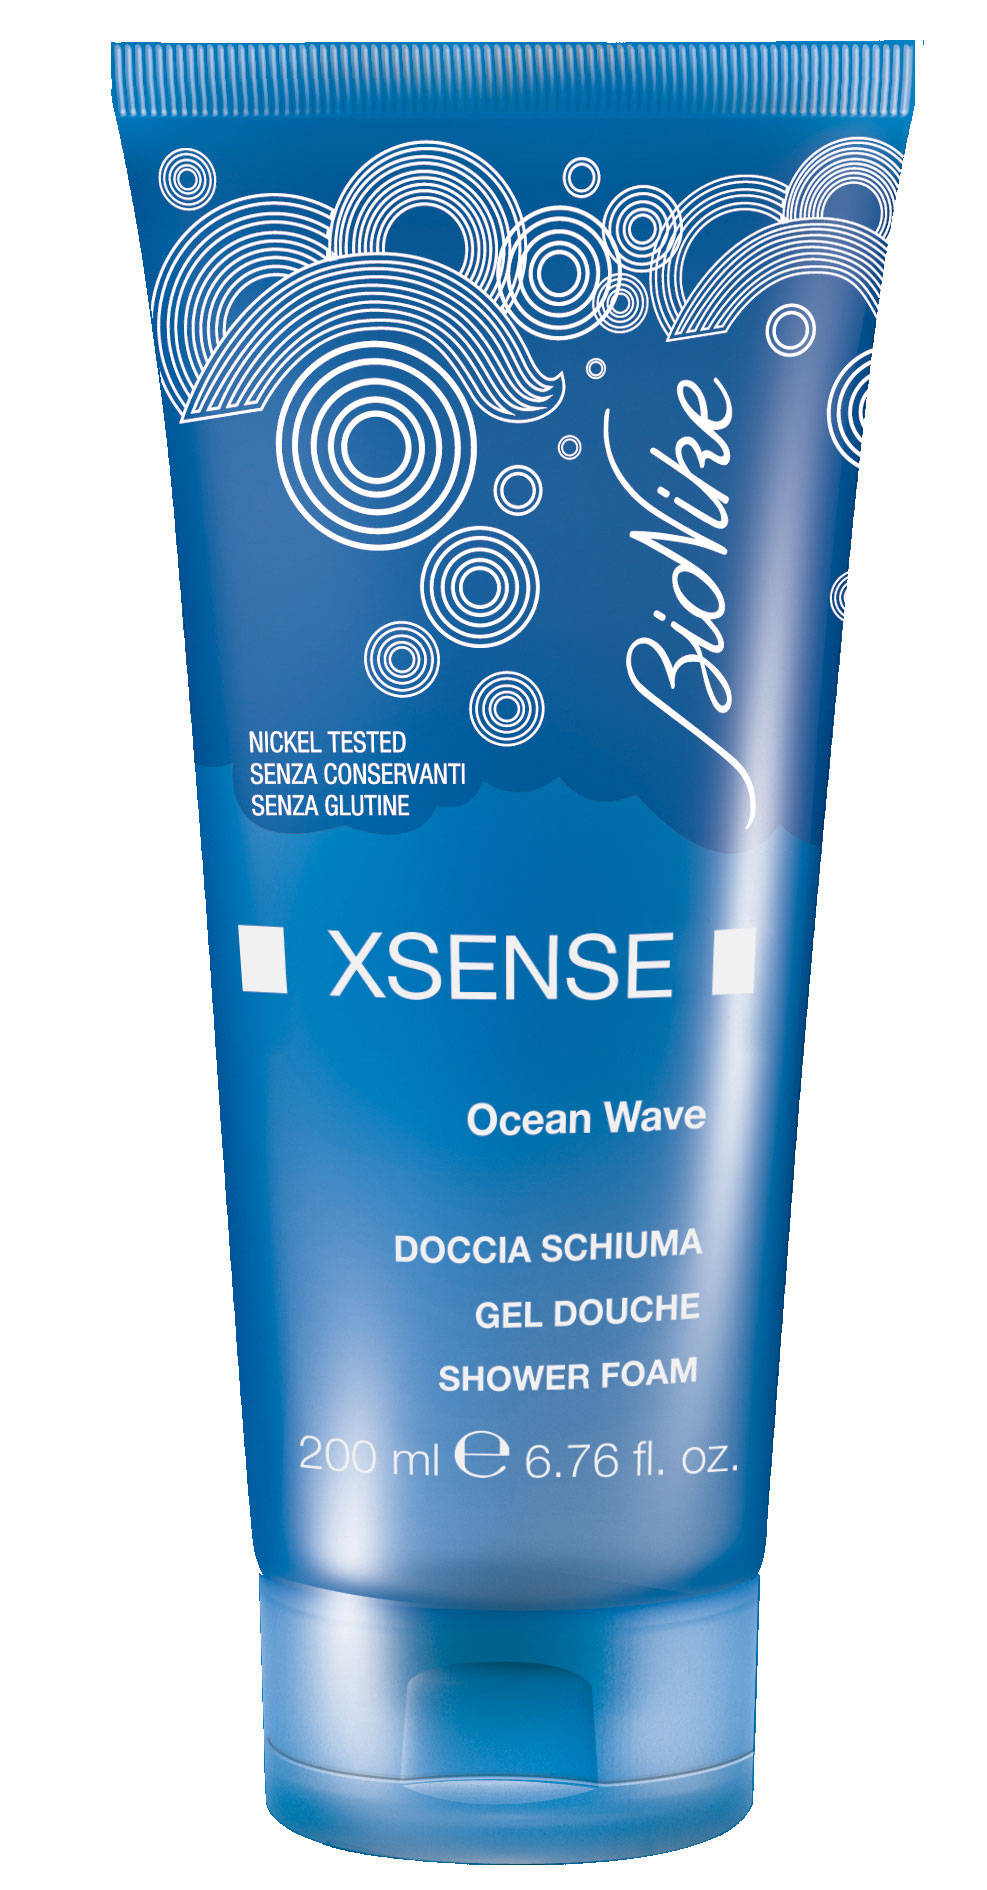 Xsense Ocean Wave Doccia Schiuma Profumato BioNike 200ml